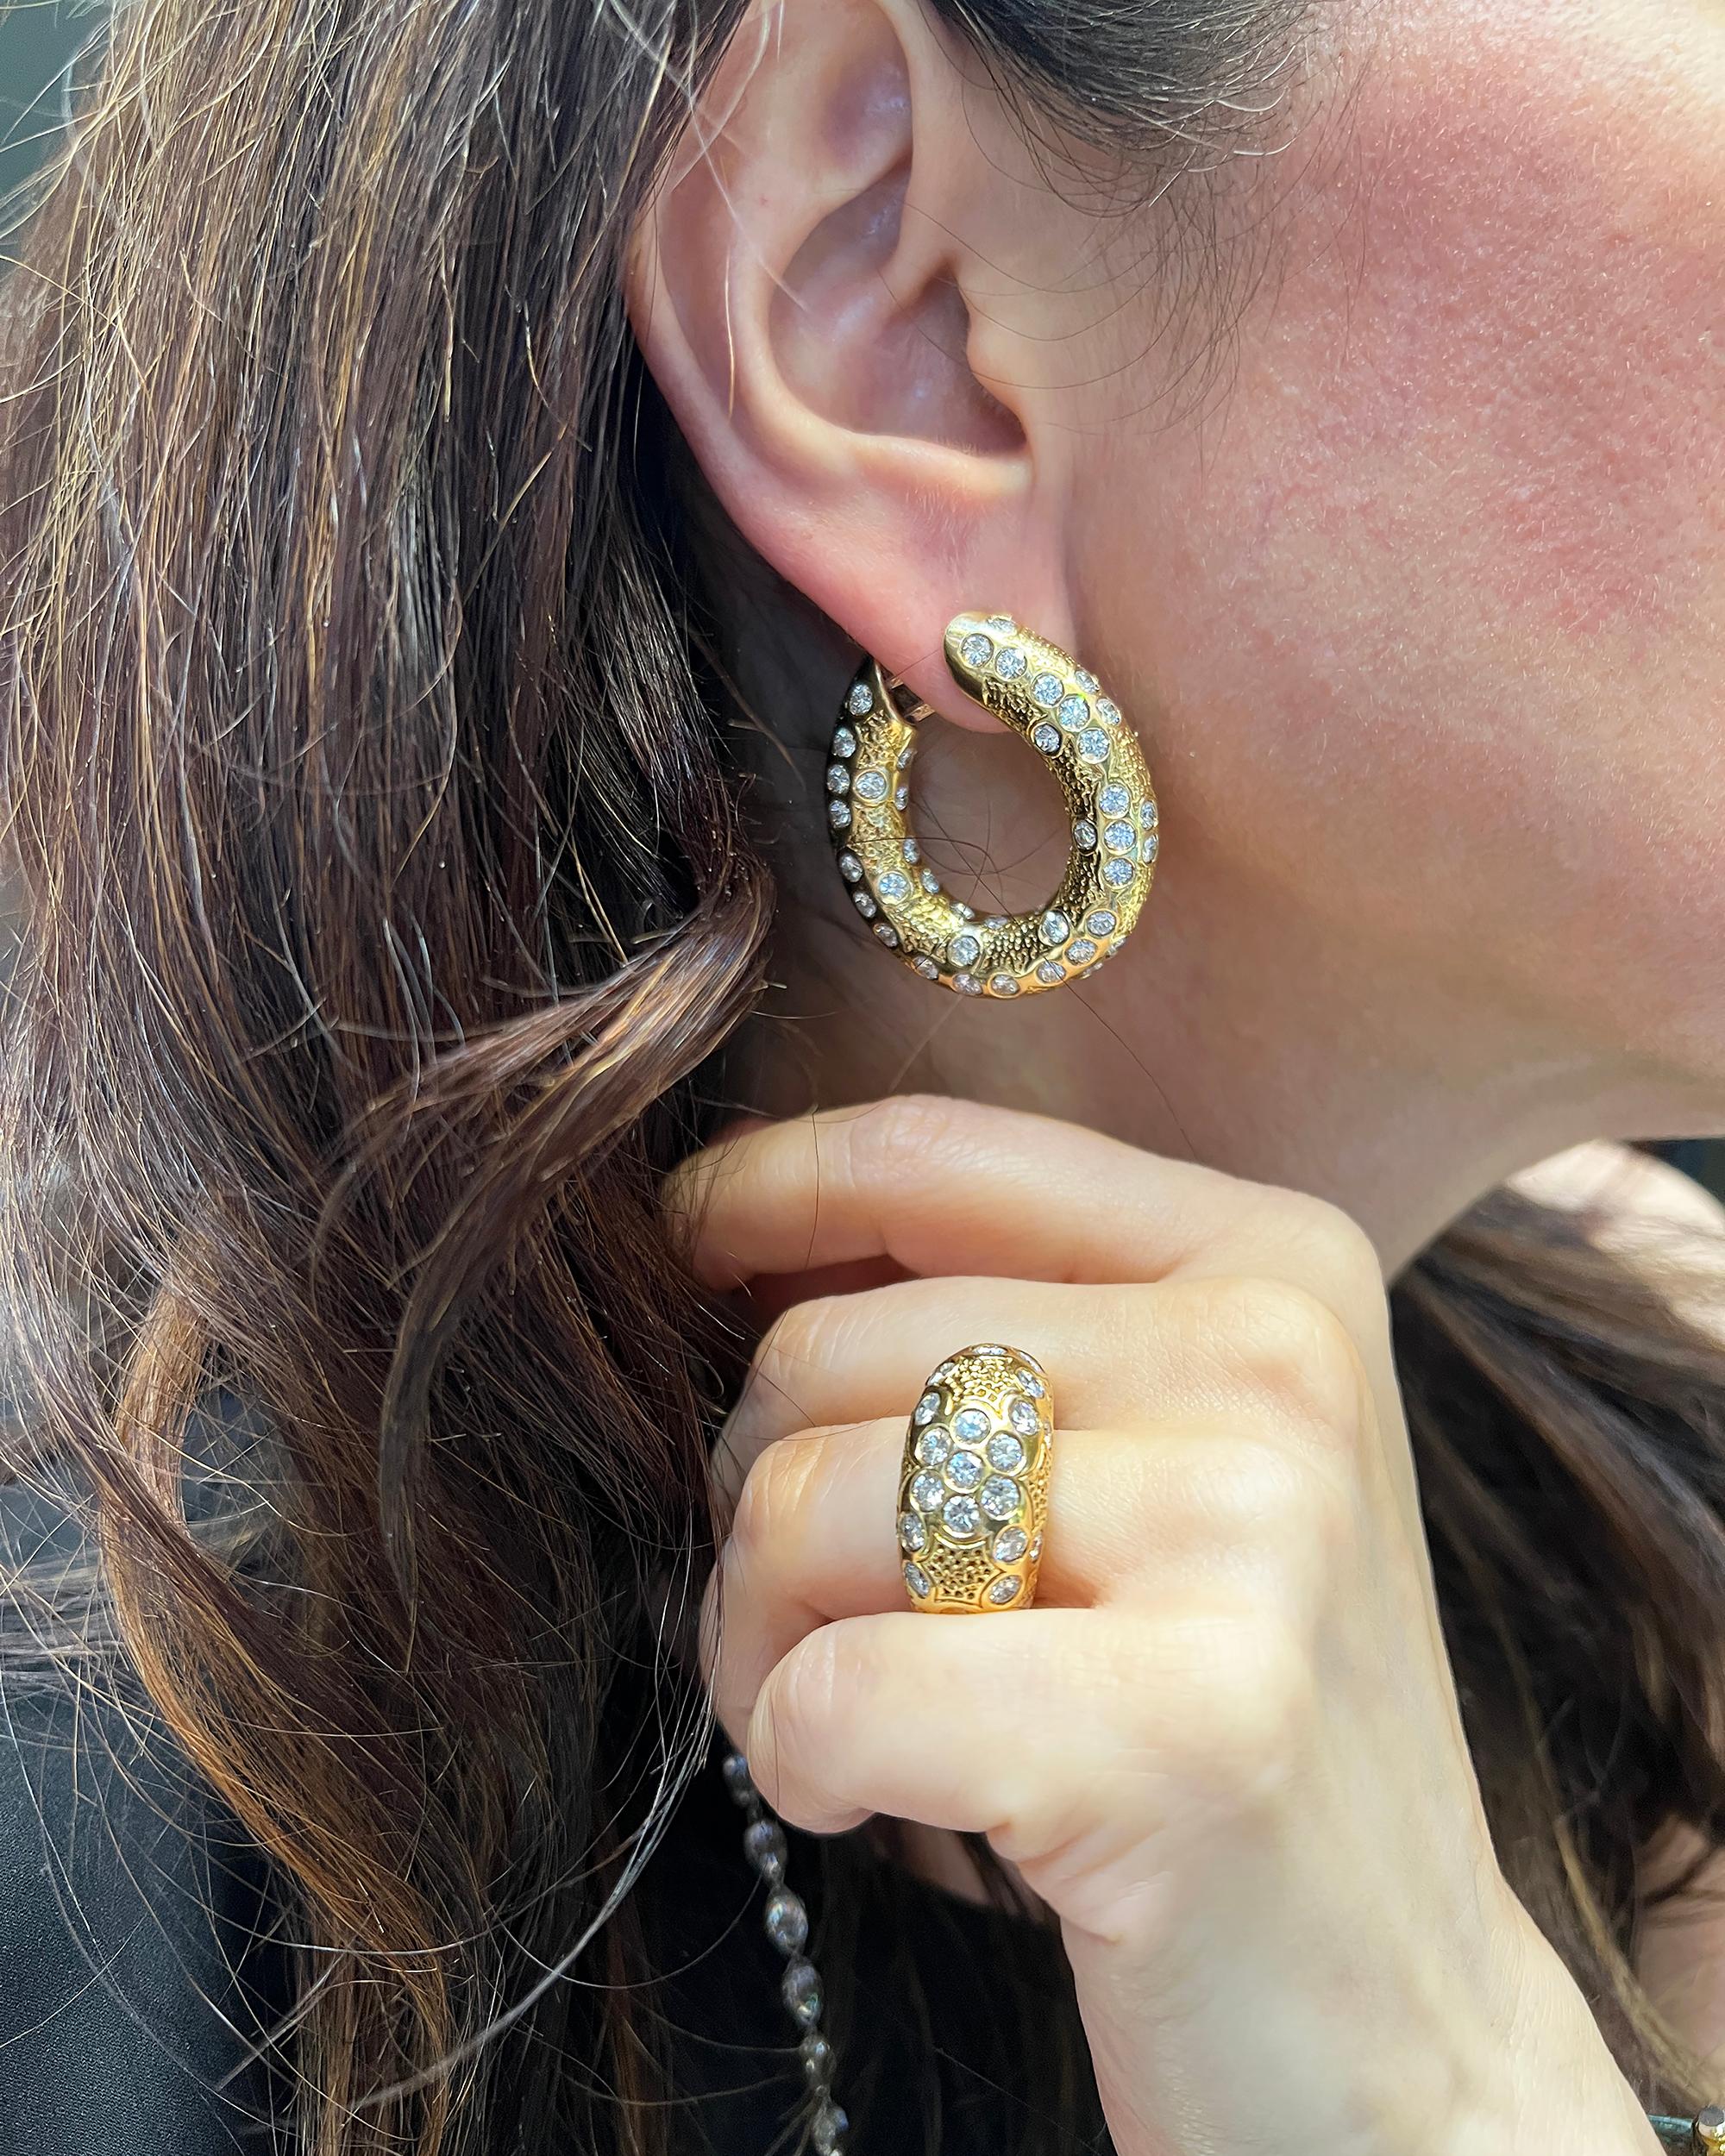 Ein Vintage-Schmuckstück, bestehend aus Ohrringen und einem Ring, das in den 1970er Jahren von Van Cleef & Arpels entworfen wurde.
Die Ohrringe sind mit runden Diamanten mit einem Gesamtgewicht von 12 Karat besetzt. 
Der Ring ist mit insgesamt 4,5